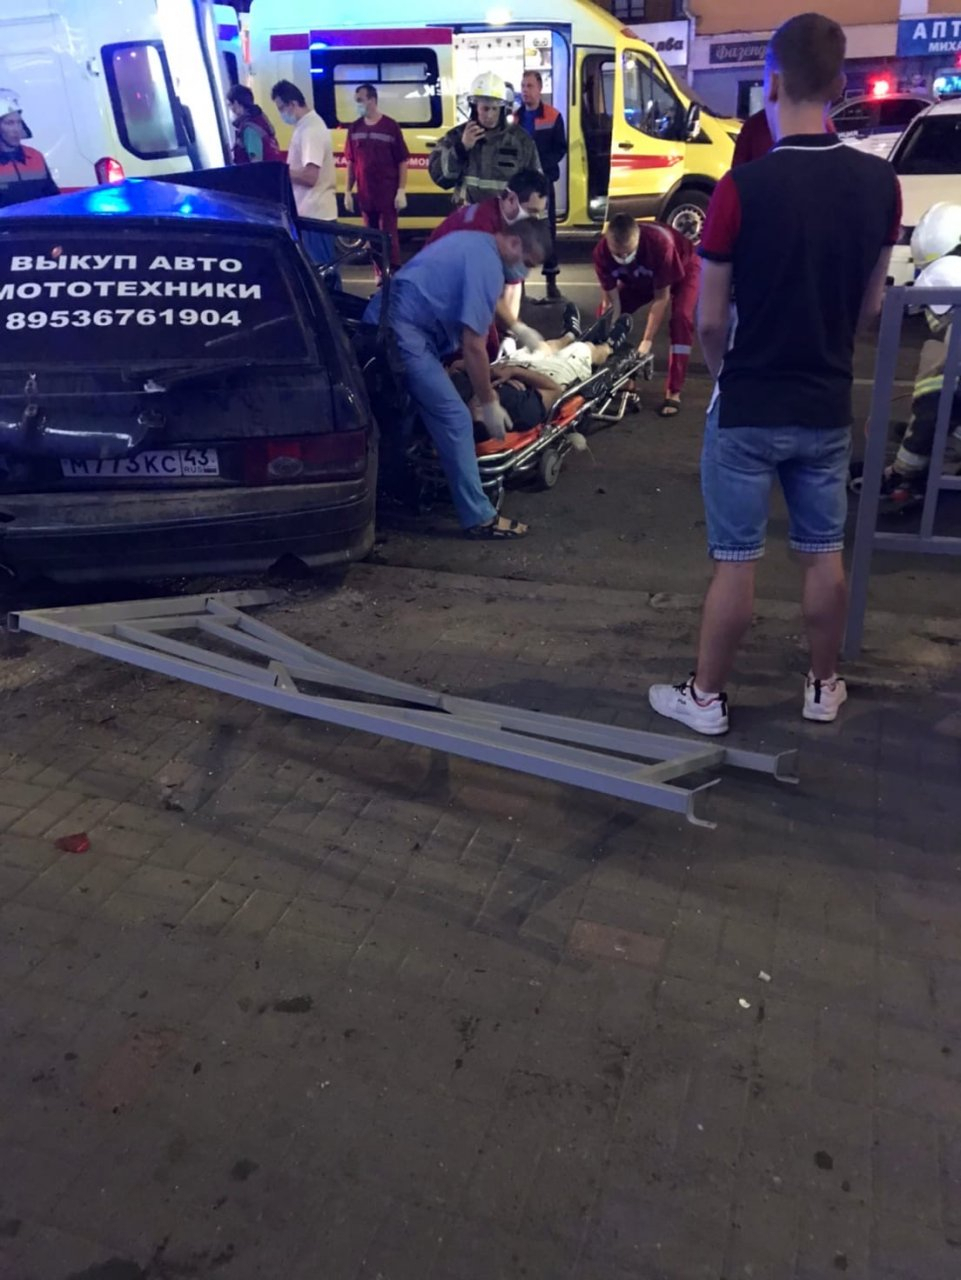 Страшное ДТП в центре Кирова: пострадавших вырезали из машины